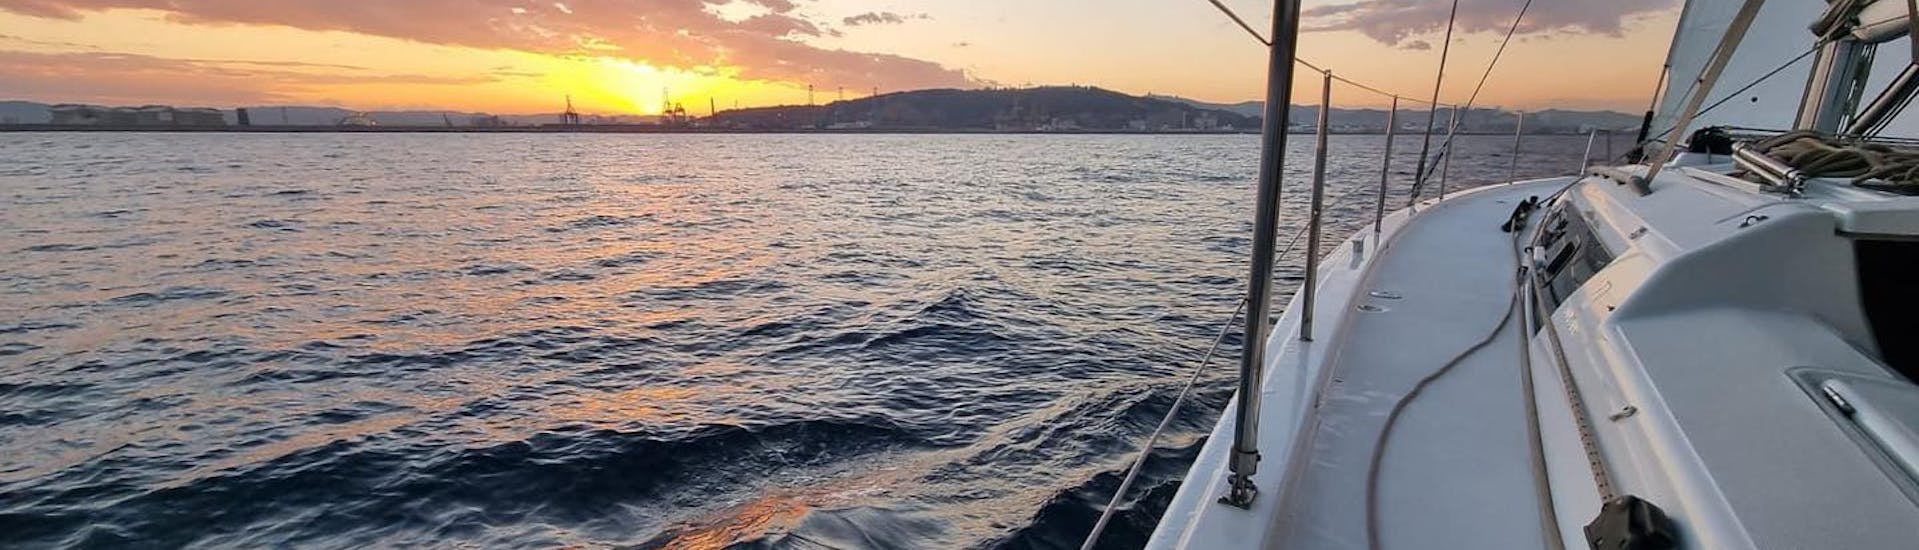 El velero navega bajo la puesta de sol durante el Sunset Yacht Trip desde Palma de Mallorca con Open Bar, SUP & Snorkeling con SeaBarcelona - Sailing Balearic.